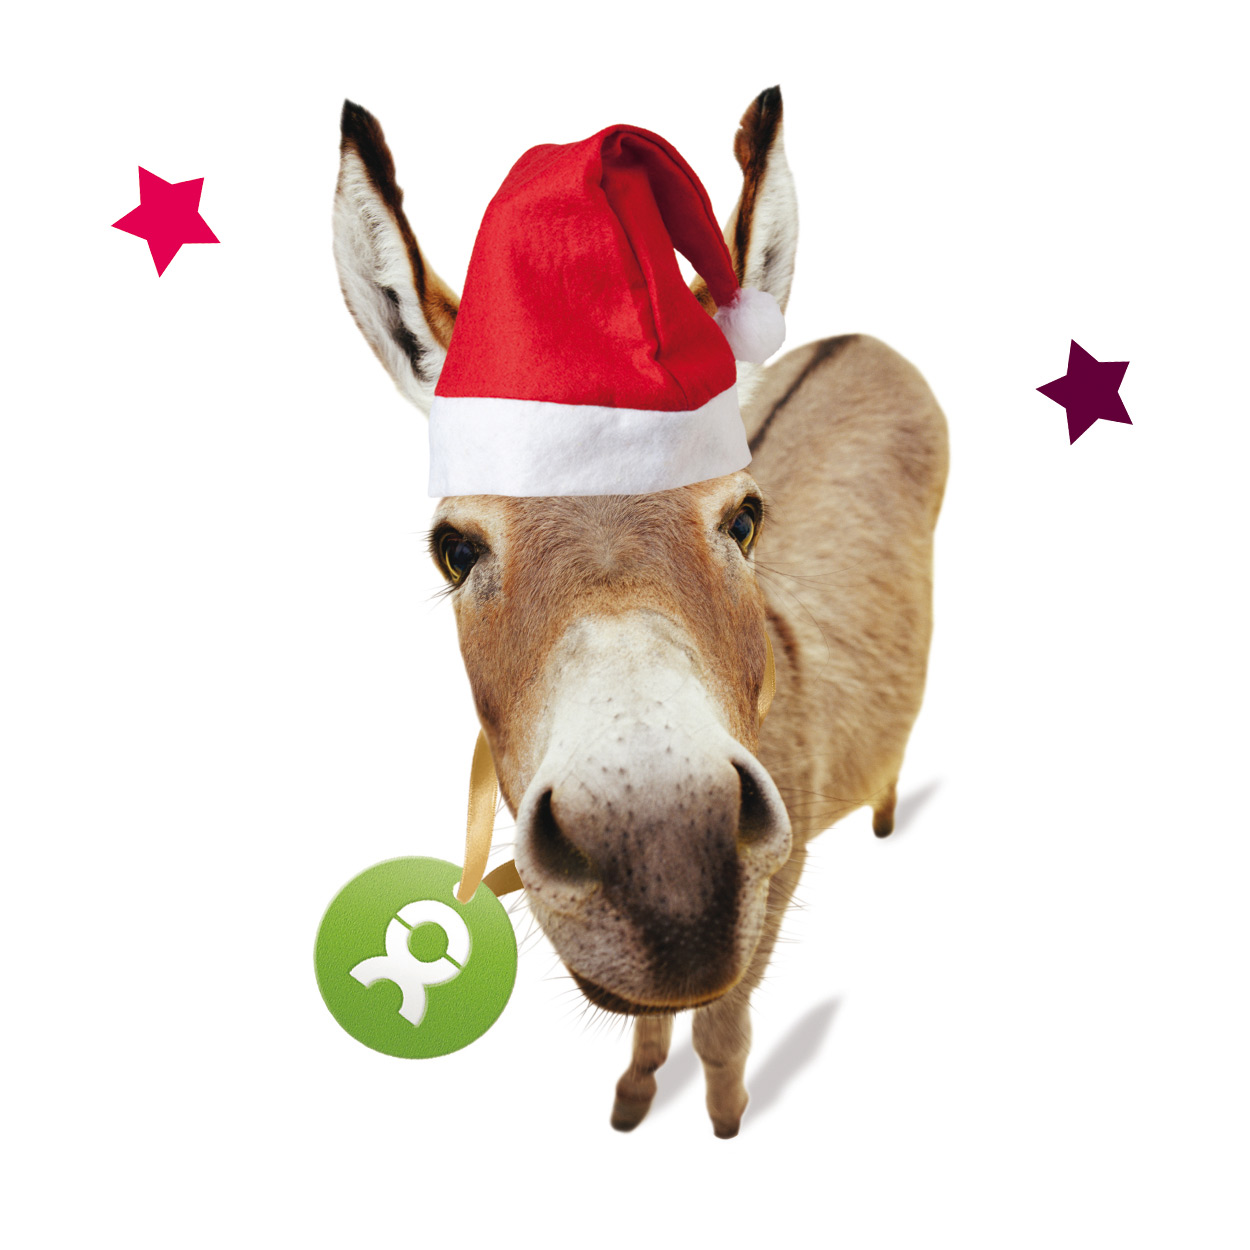 Beispiel Geschenk Spende Esel mit Weihnachtsmütze, umrahmt von zwei roten Sternen